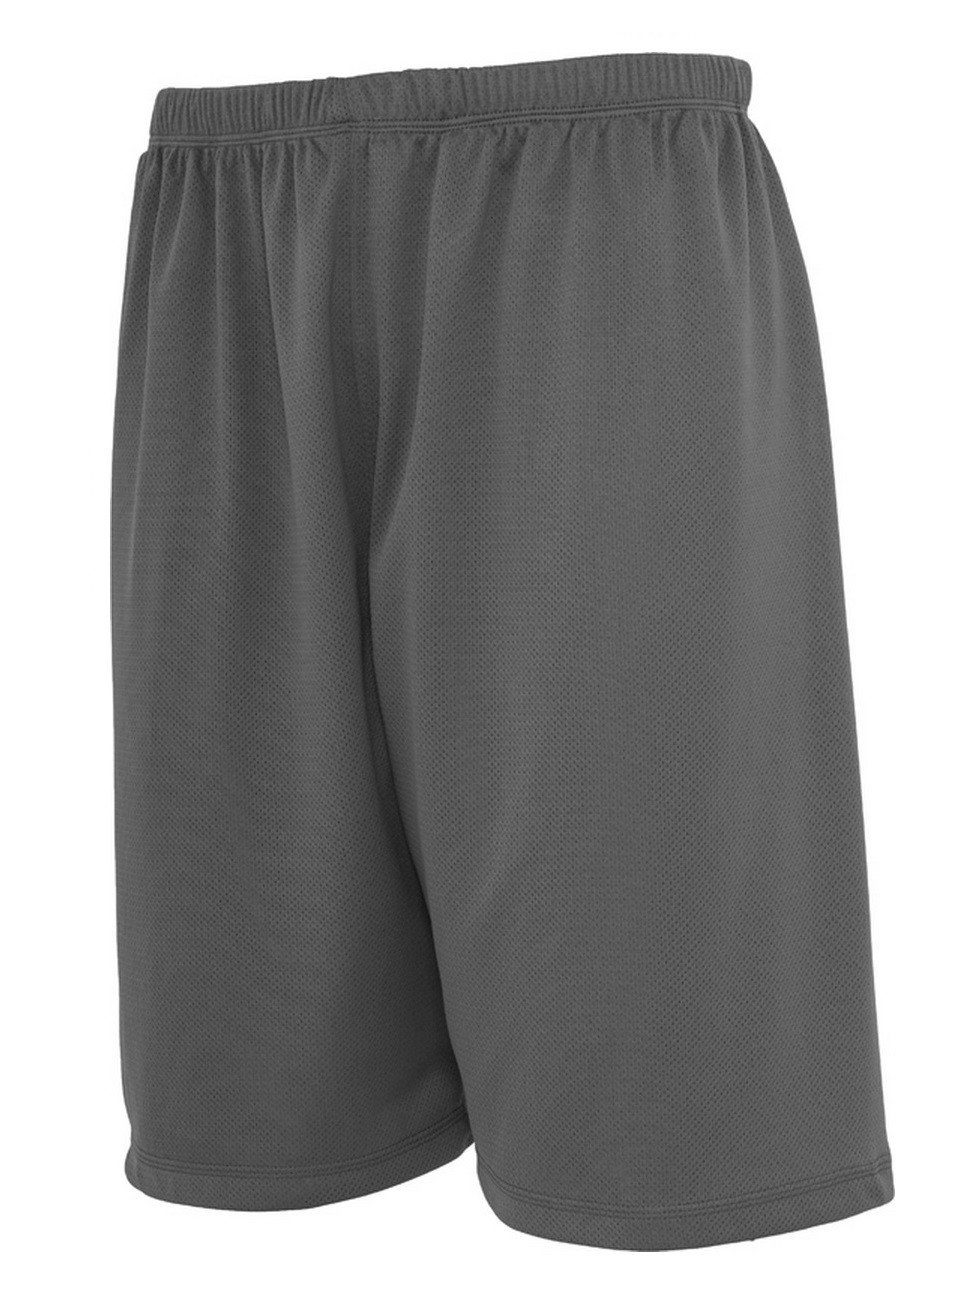 URBAN CLASSICS Shorts Bball mit Grey Mesh Mesheinlage Shorts (00111)